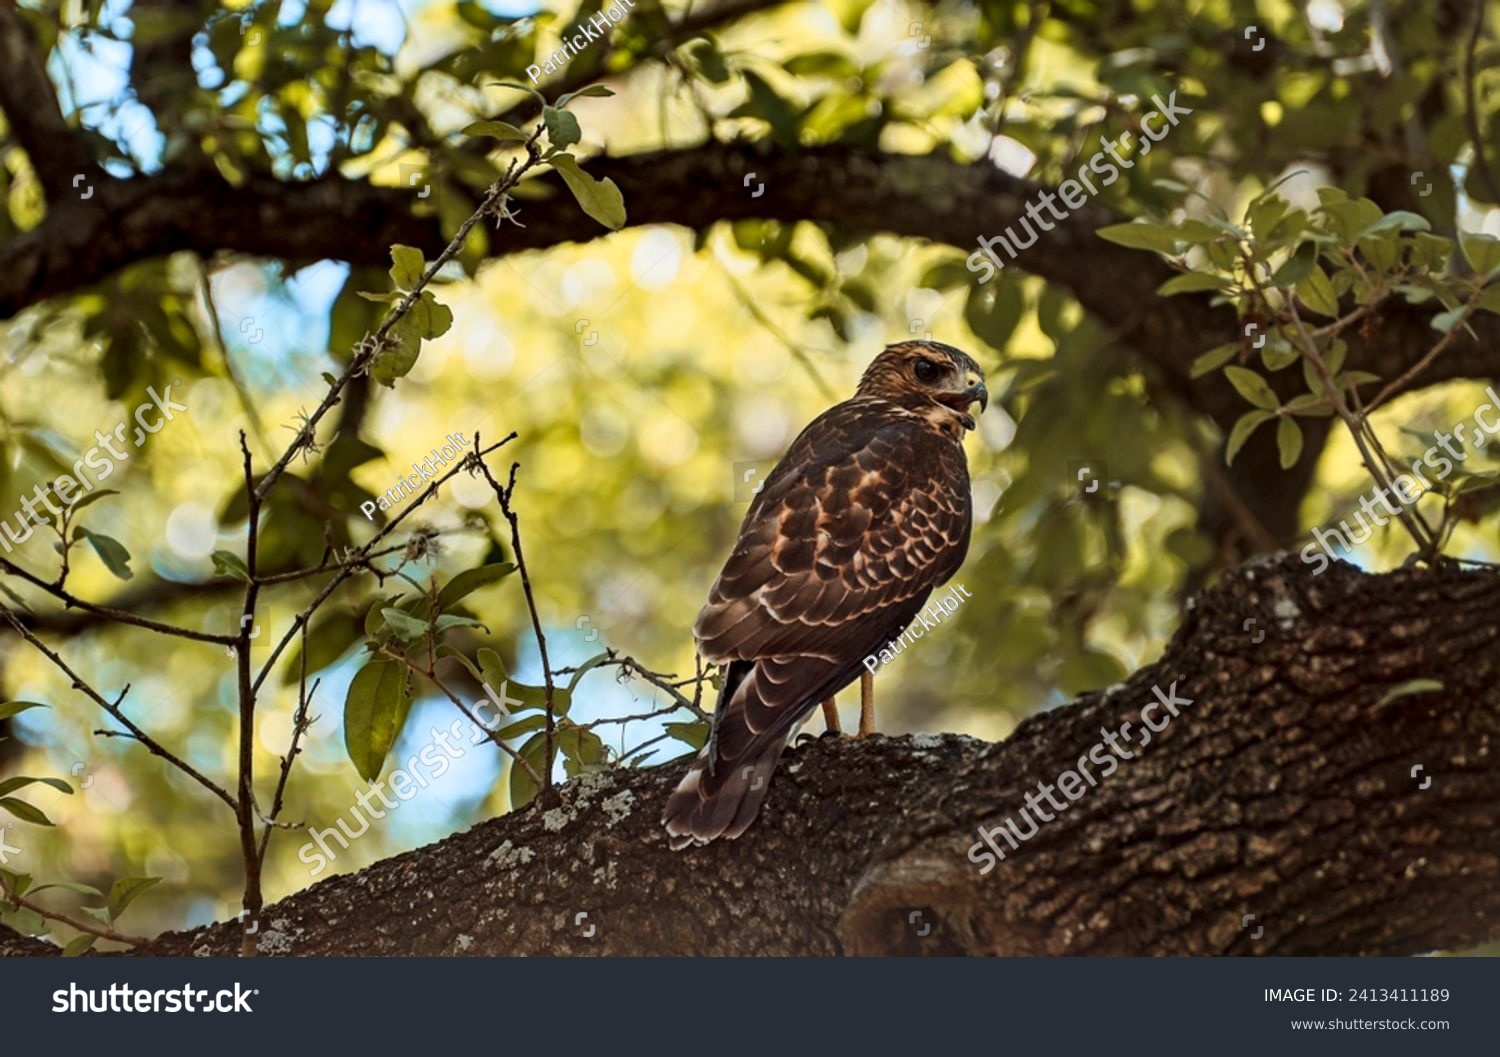 Cooper's hawk in an oak tree. #2413411189